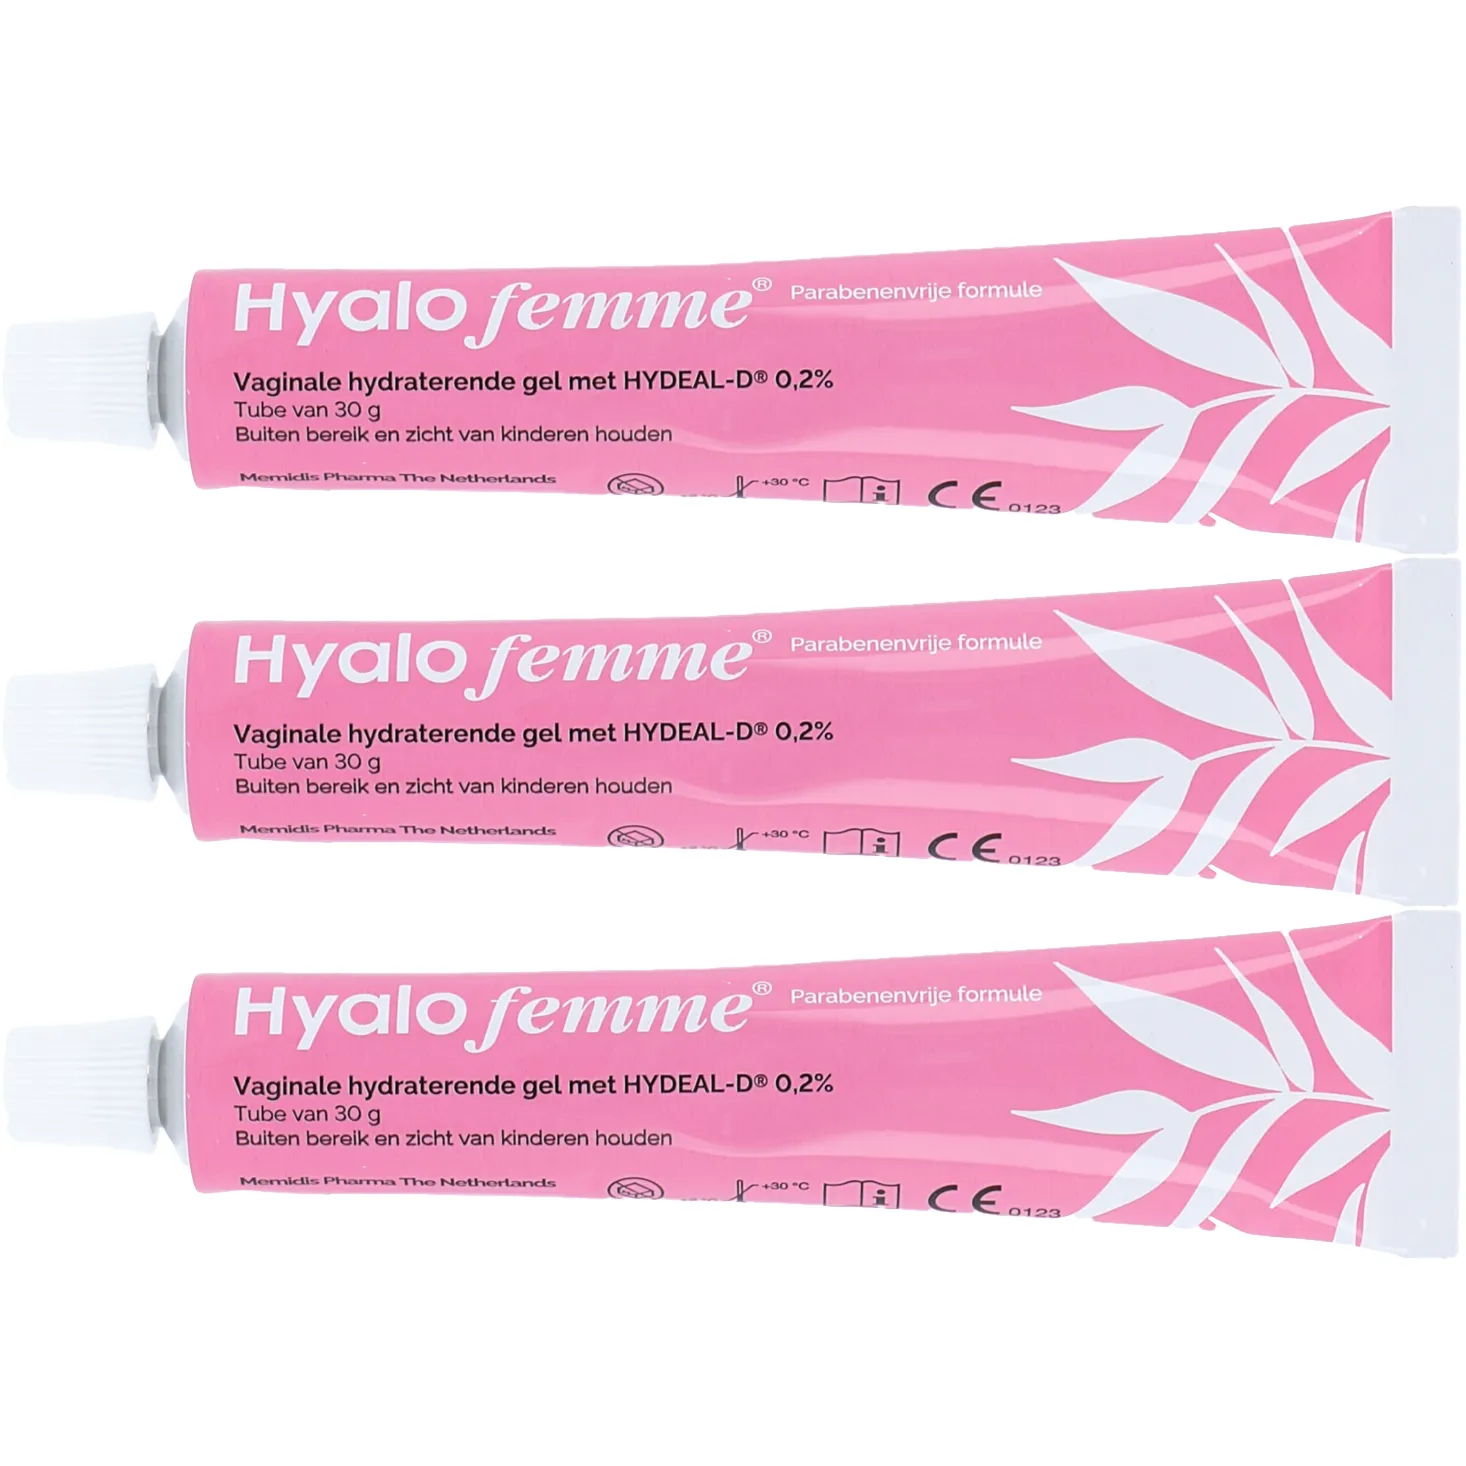 Free HyaloFemme Feminine Cream Moisturiser